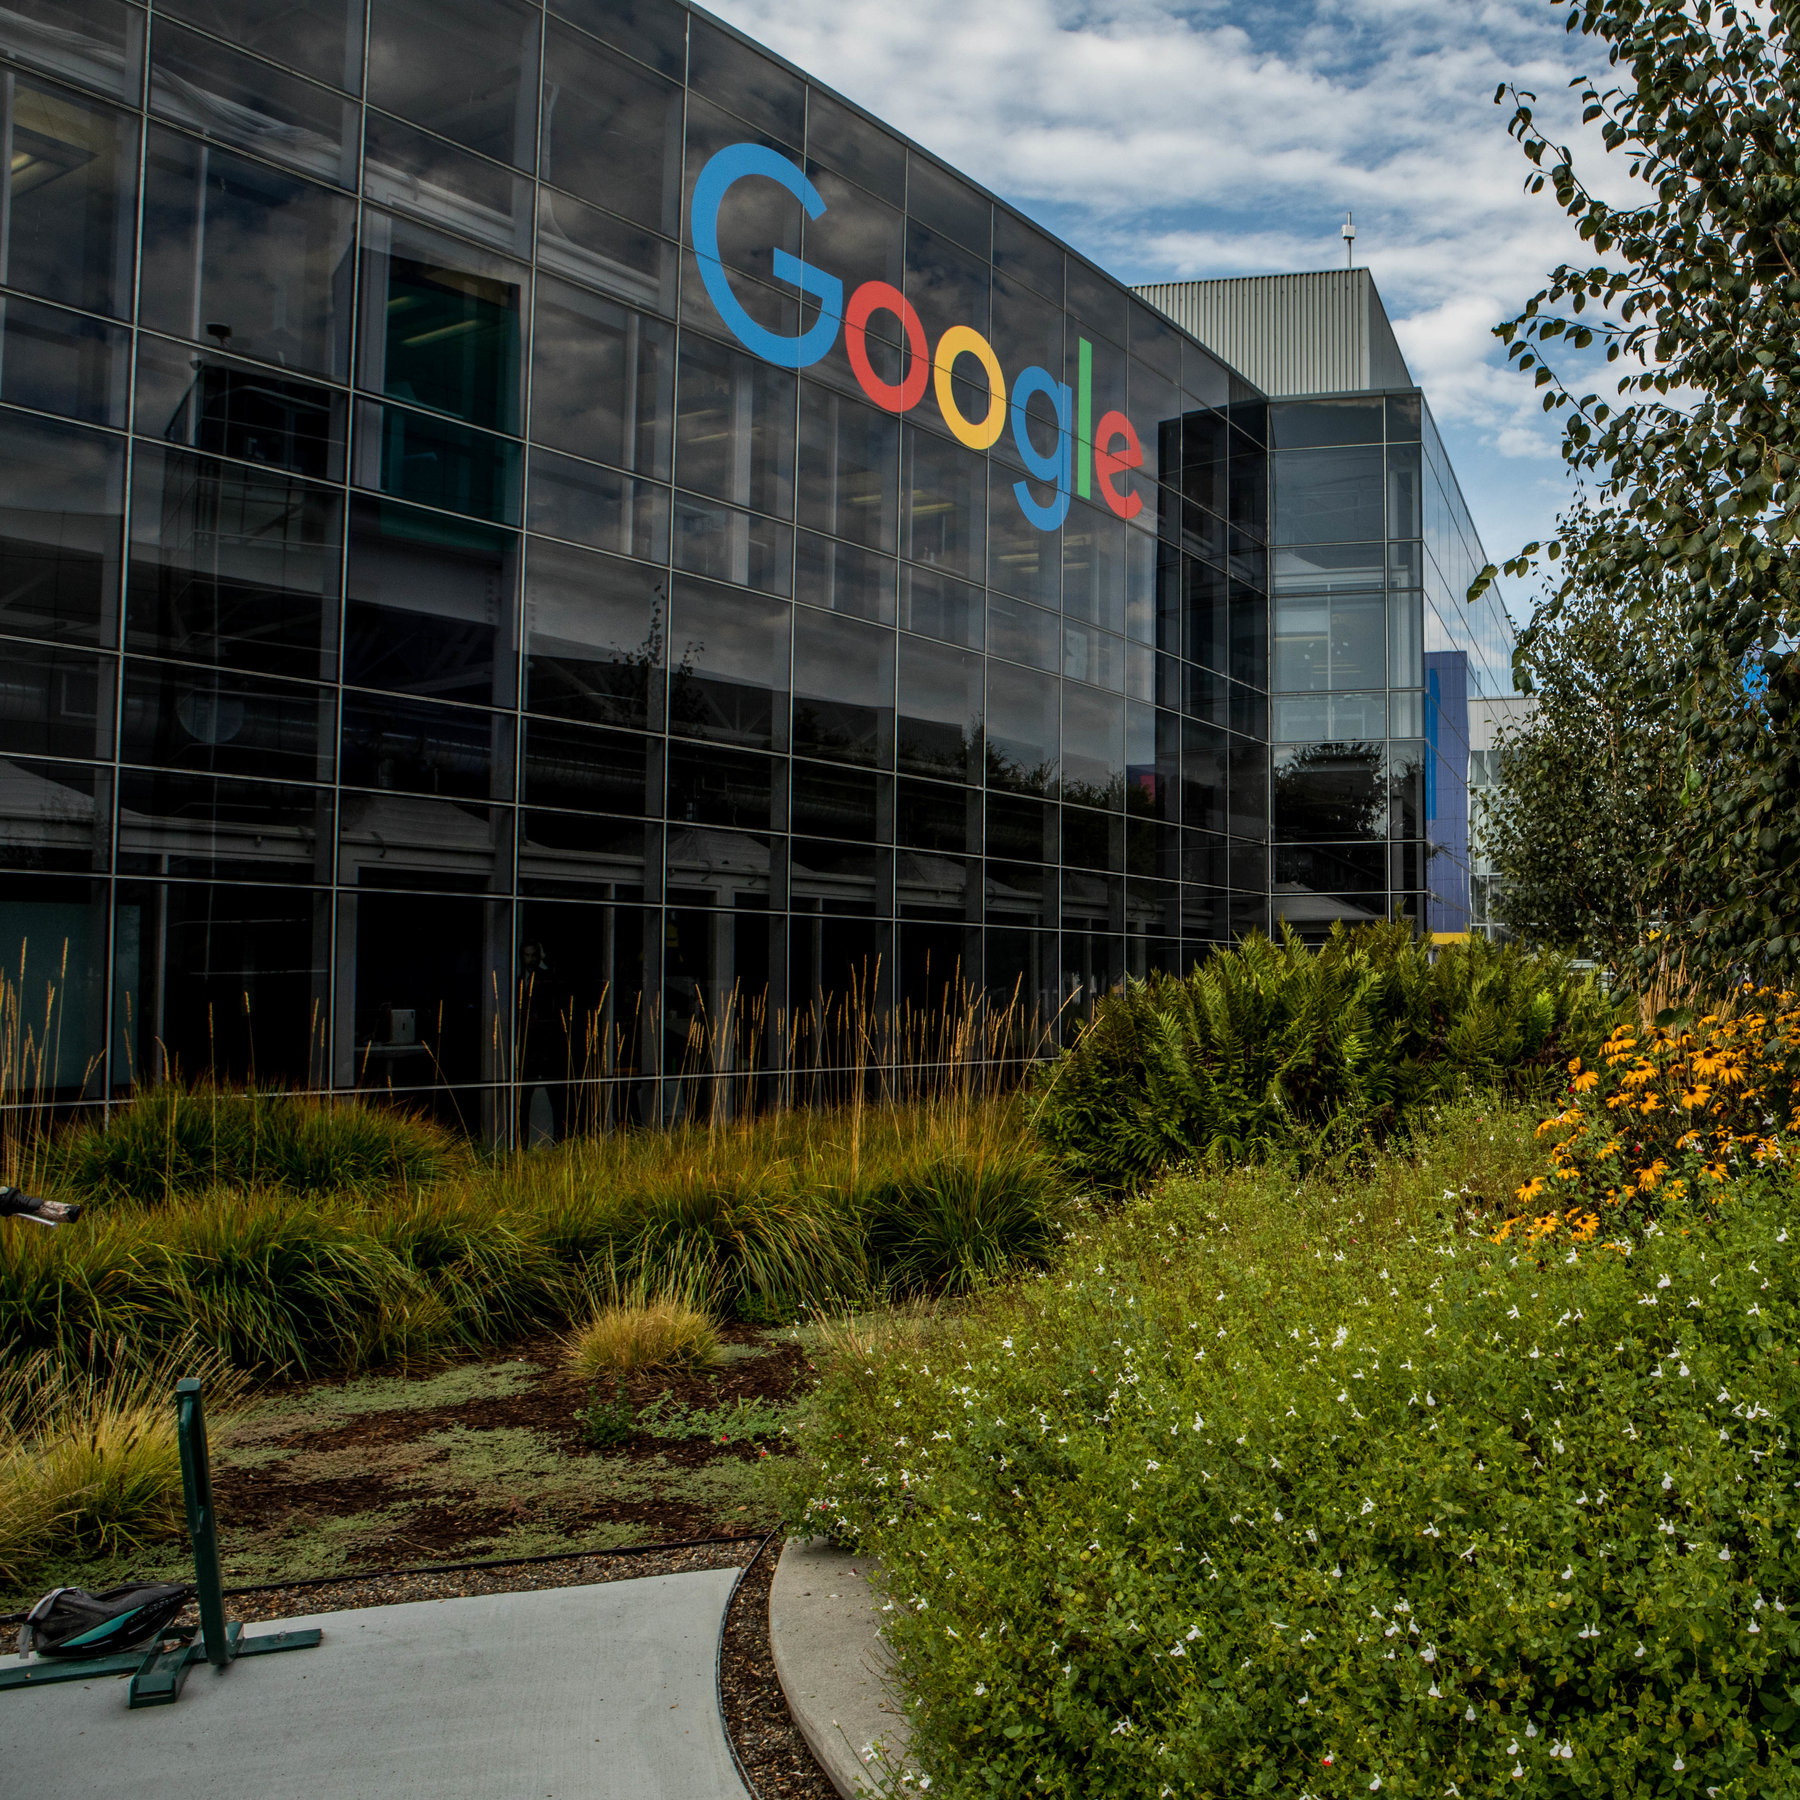  Google blen një kompani të sigurisë kibernetike për $5.4 miliardë